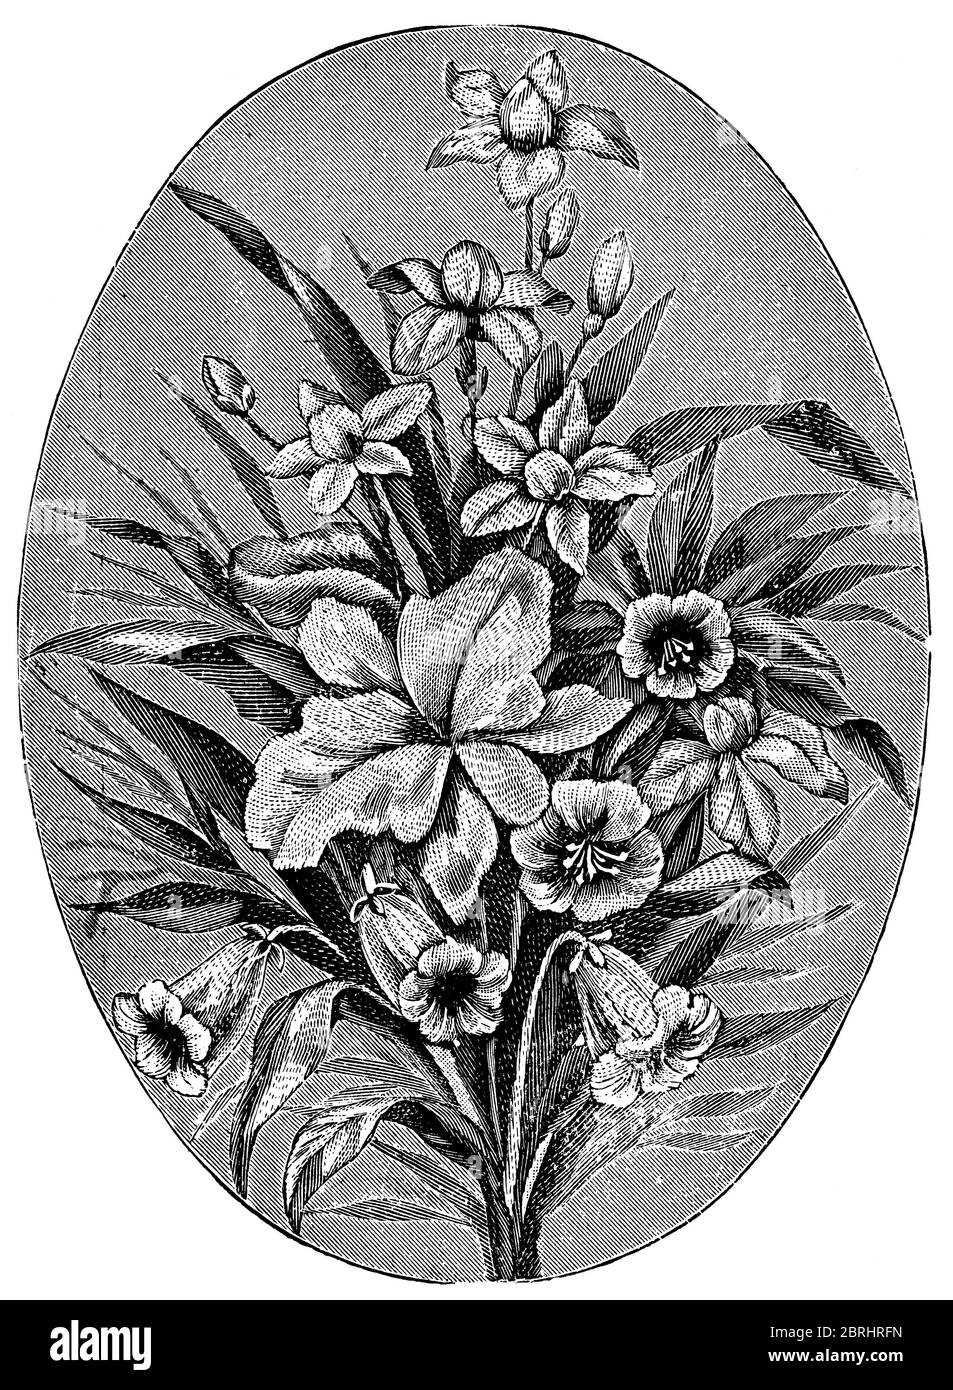 Décoration fleurie à broderie machine. Illustration du XIXe siècle. Fond blanc. Banque D'Images